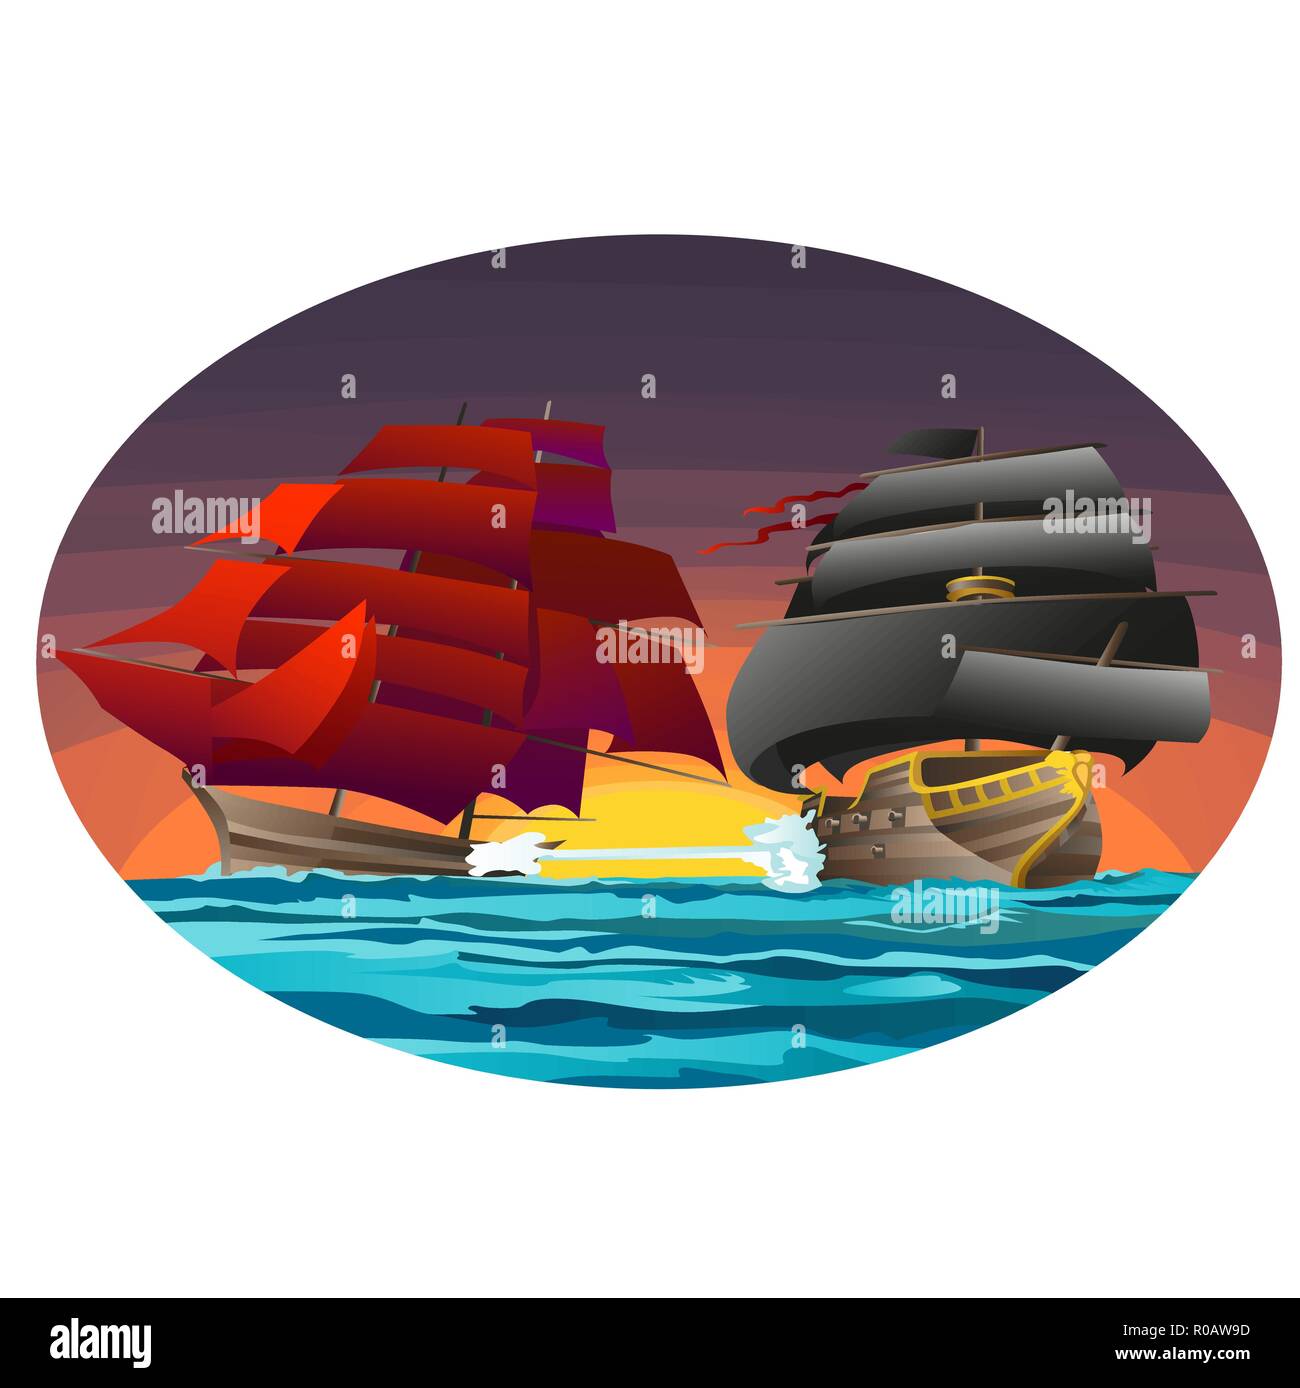 Poster ovale avec deux navires de mer rouge et noir avec des voiles. Cartoon Vector illustration close-up. Illustration de Vecteur